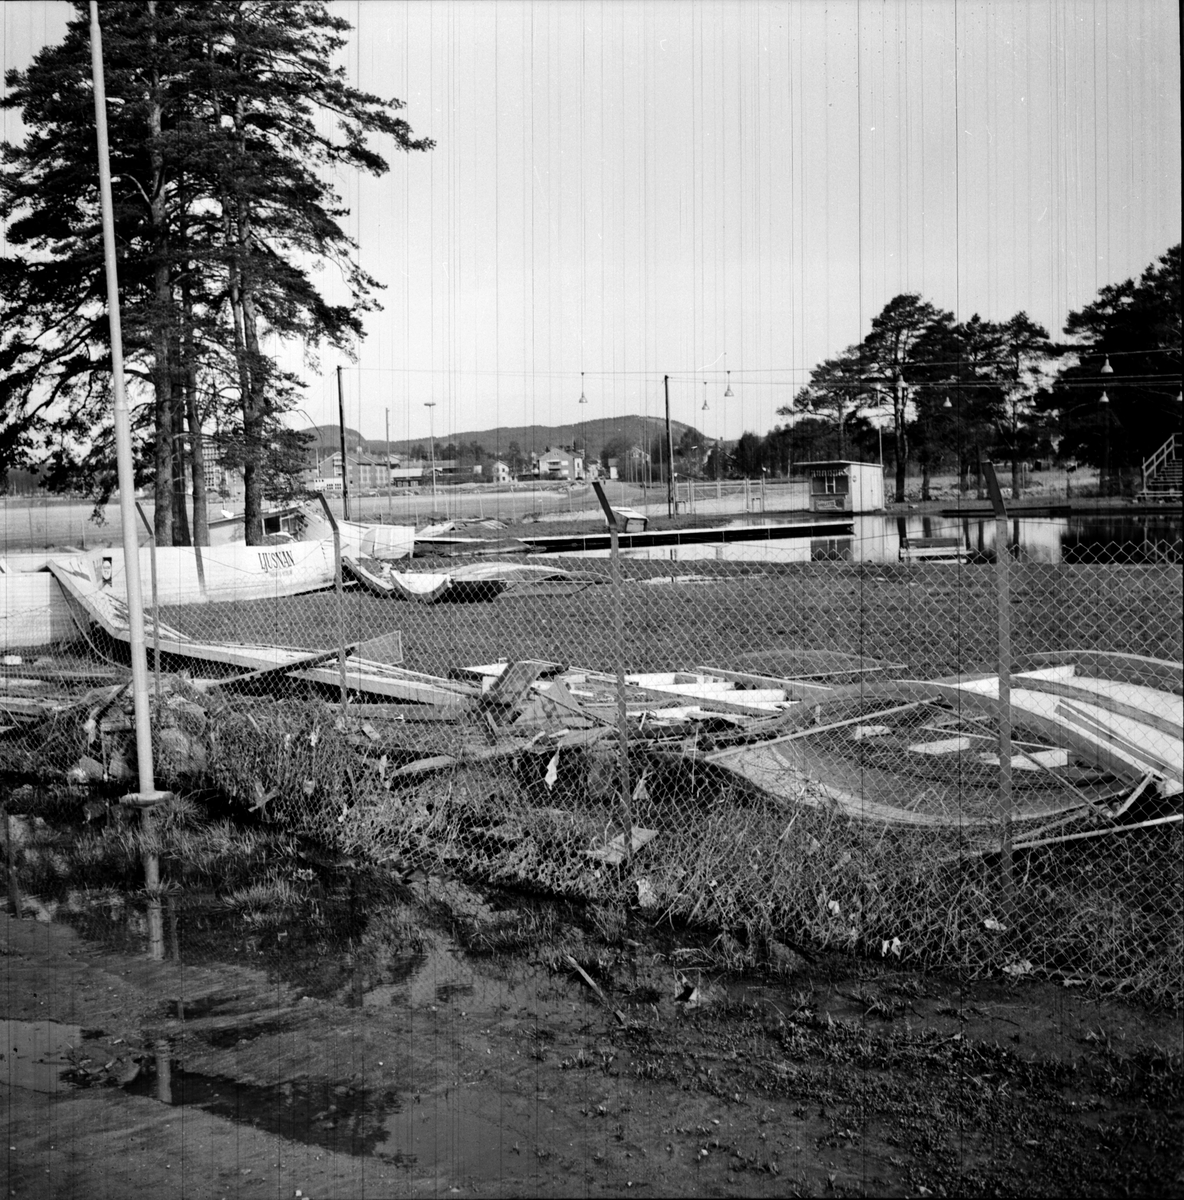 Långnäs idrottsplats,
Vårflodens verk,
27 Maj 1966